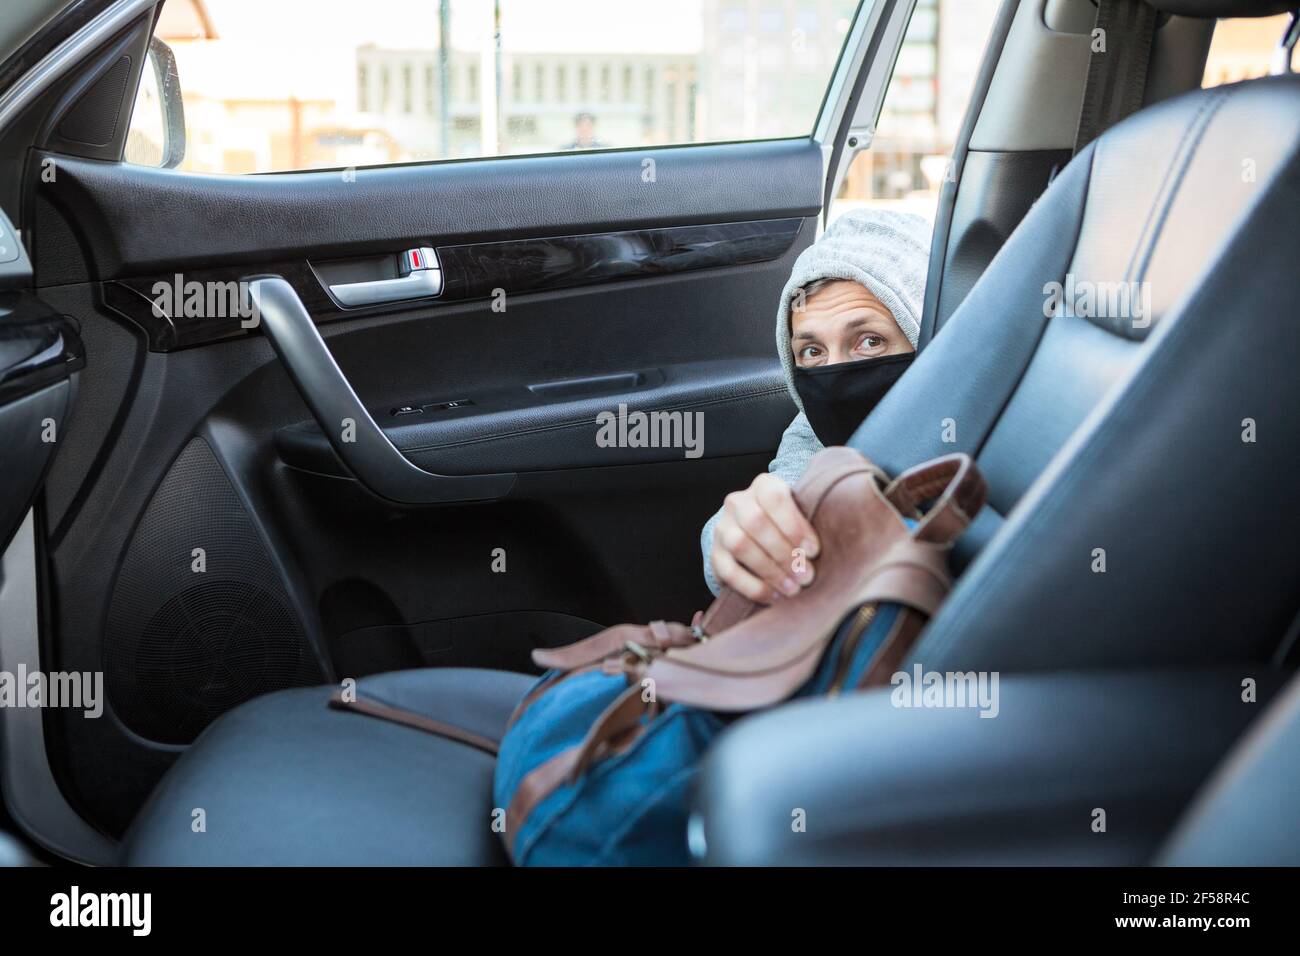 Vol de sac d'une voiture, homme méconnaissable dans un masque noir et un  sweat à capuche emportant un sac à main femelle du siège passager avant  Photo Stock - Alamy